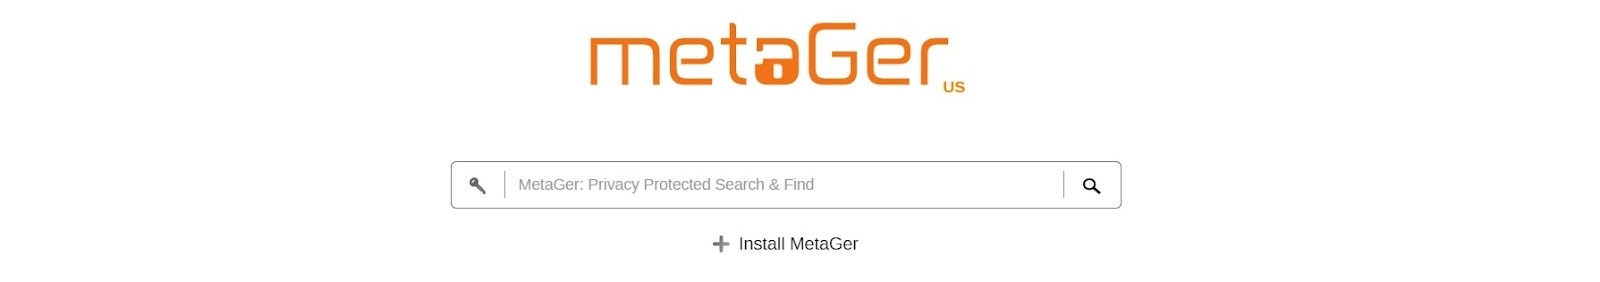 Зарубежная поисковая система MetaGer